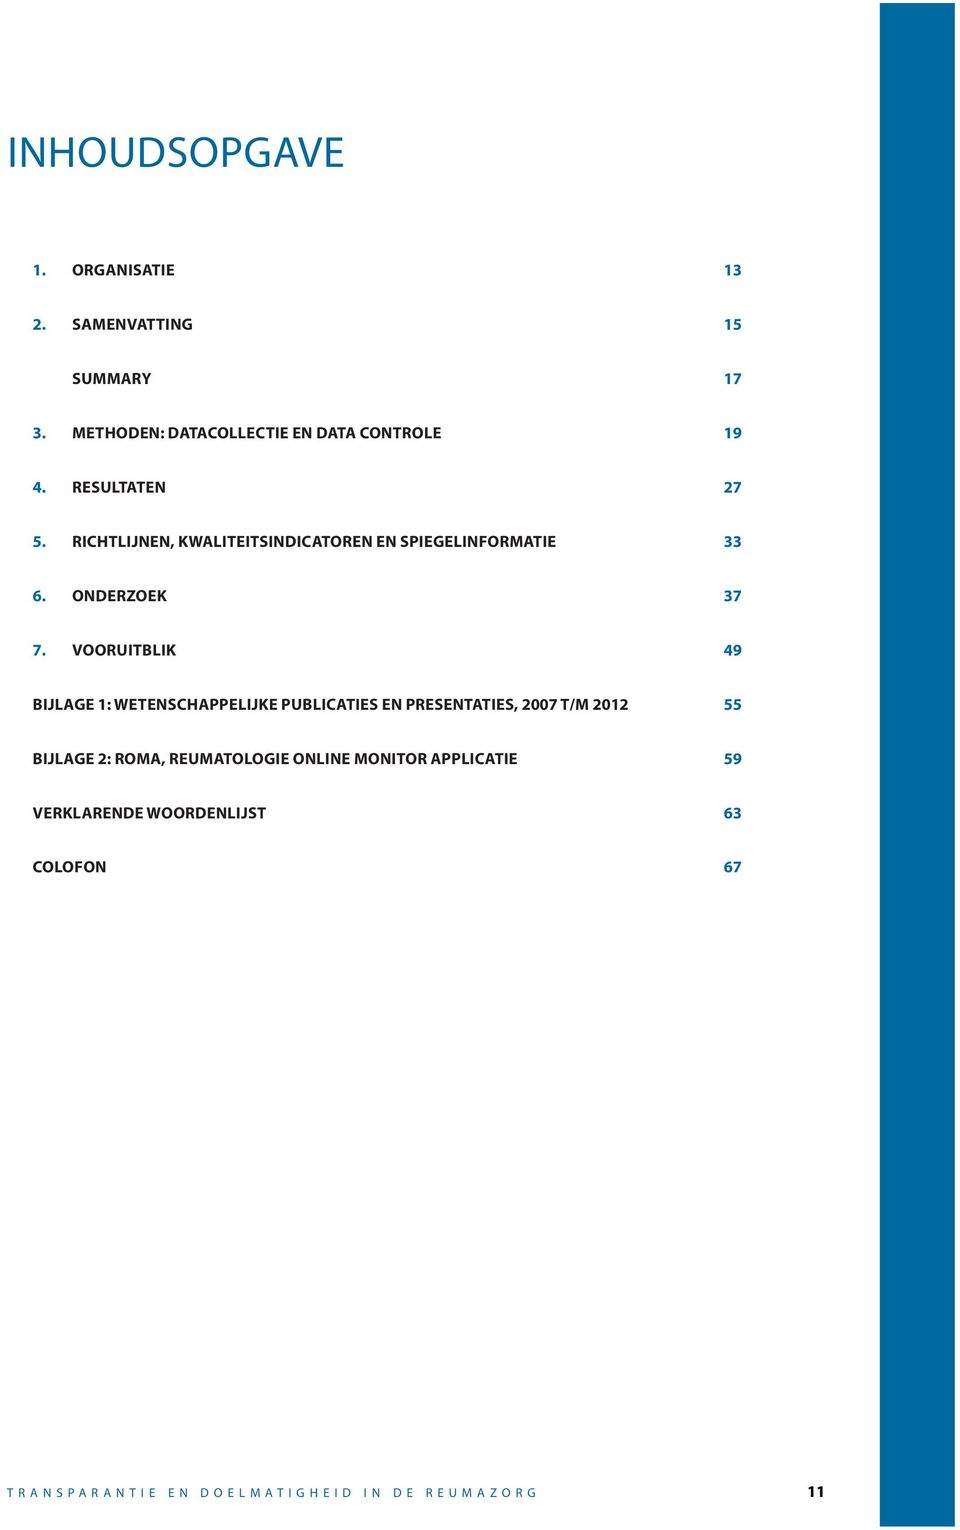 Vooruitblik 49 Bijlage 1: Wetenschappelijke publicaties en presentaties, 2007 t/m 2012 55 Bijlage 2: ROMA,